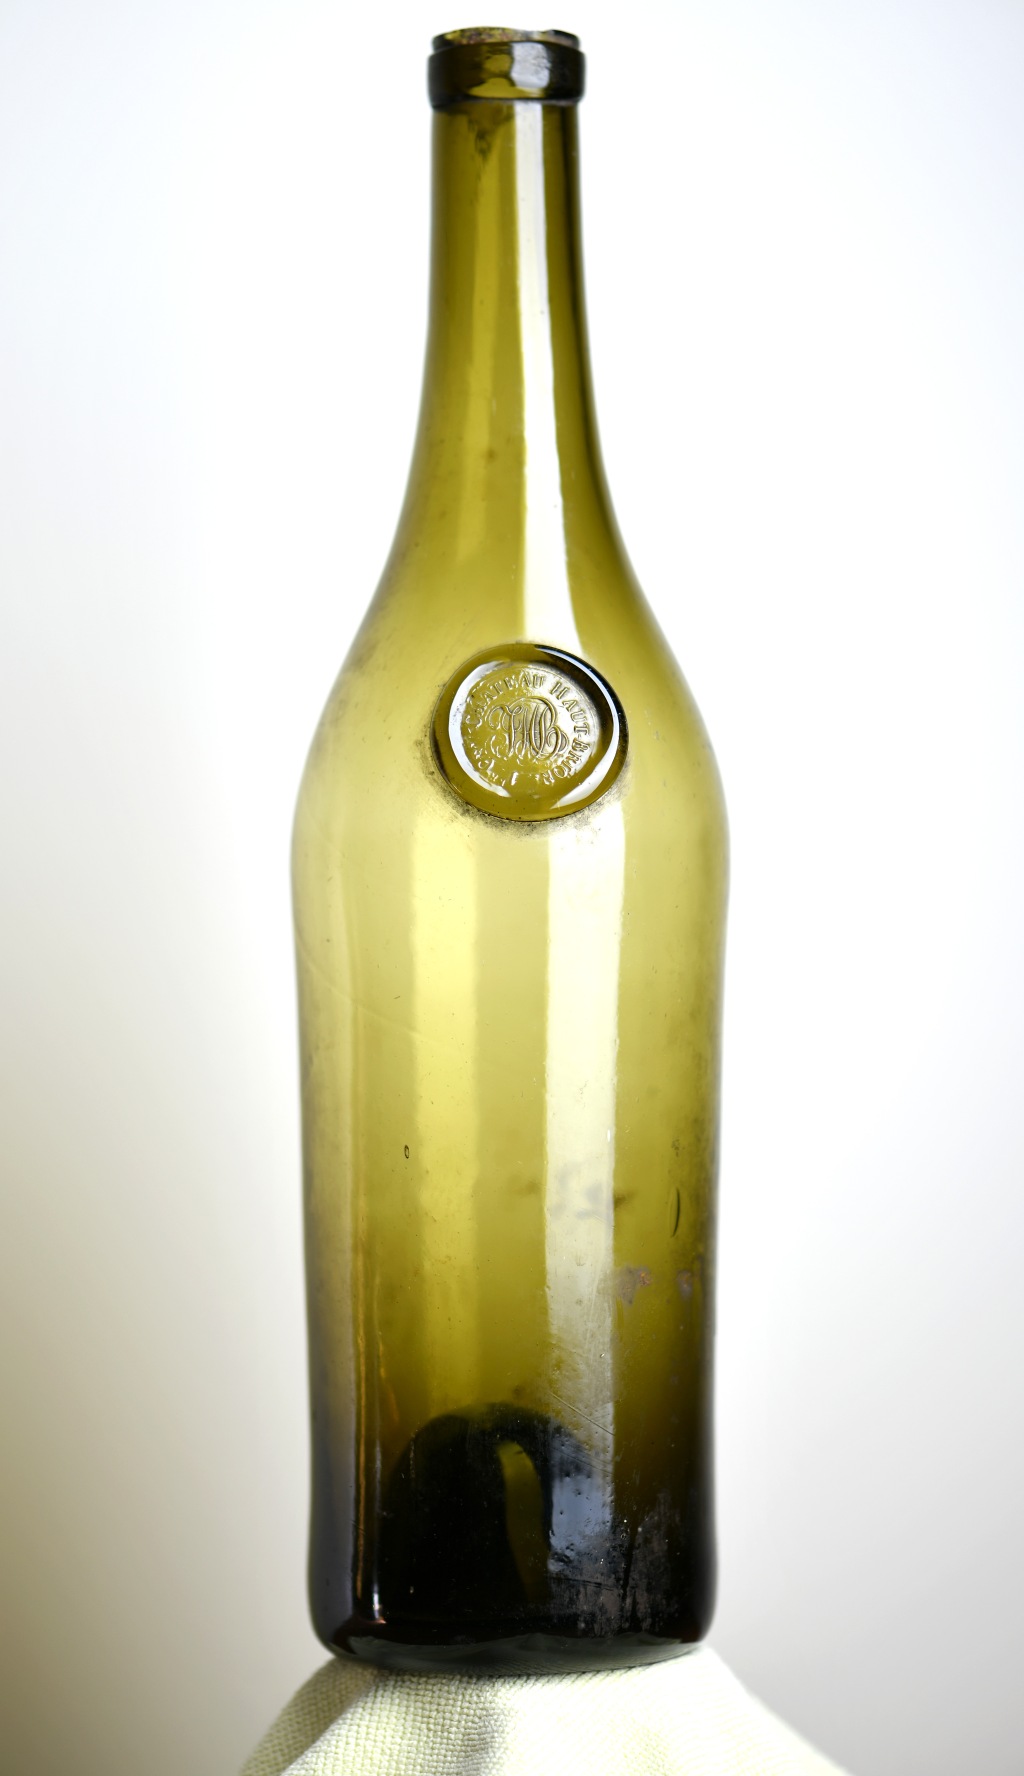 Où il est question d’une prestigieuse bouteille de Haut-Brion datée de 1825 à 1836 – About a prestigious Haut-Brion bottle dated 1825 to 1836